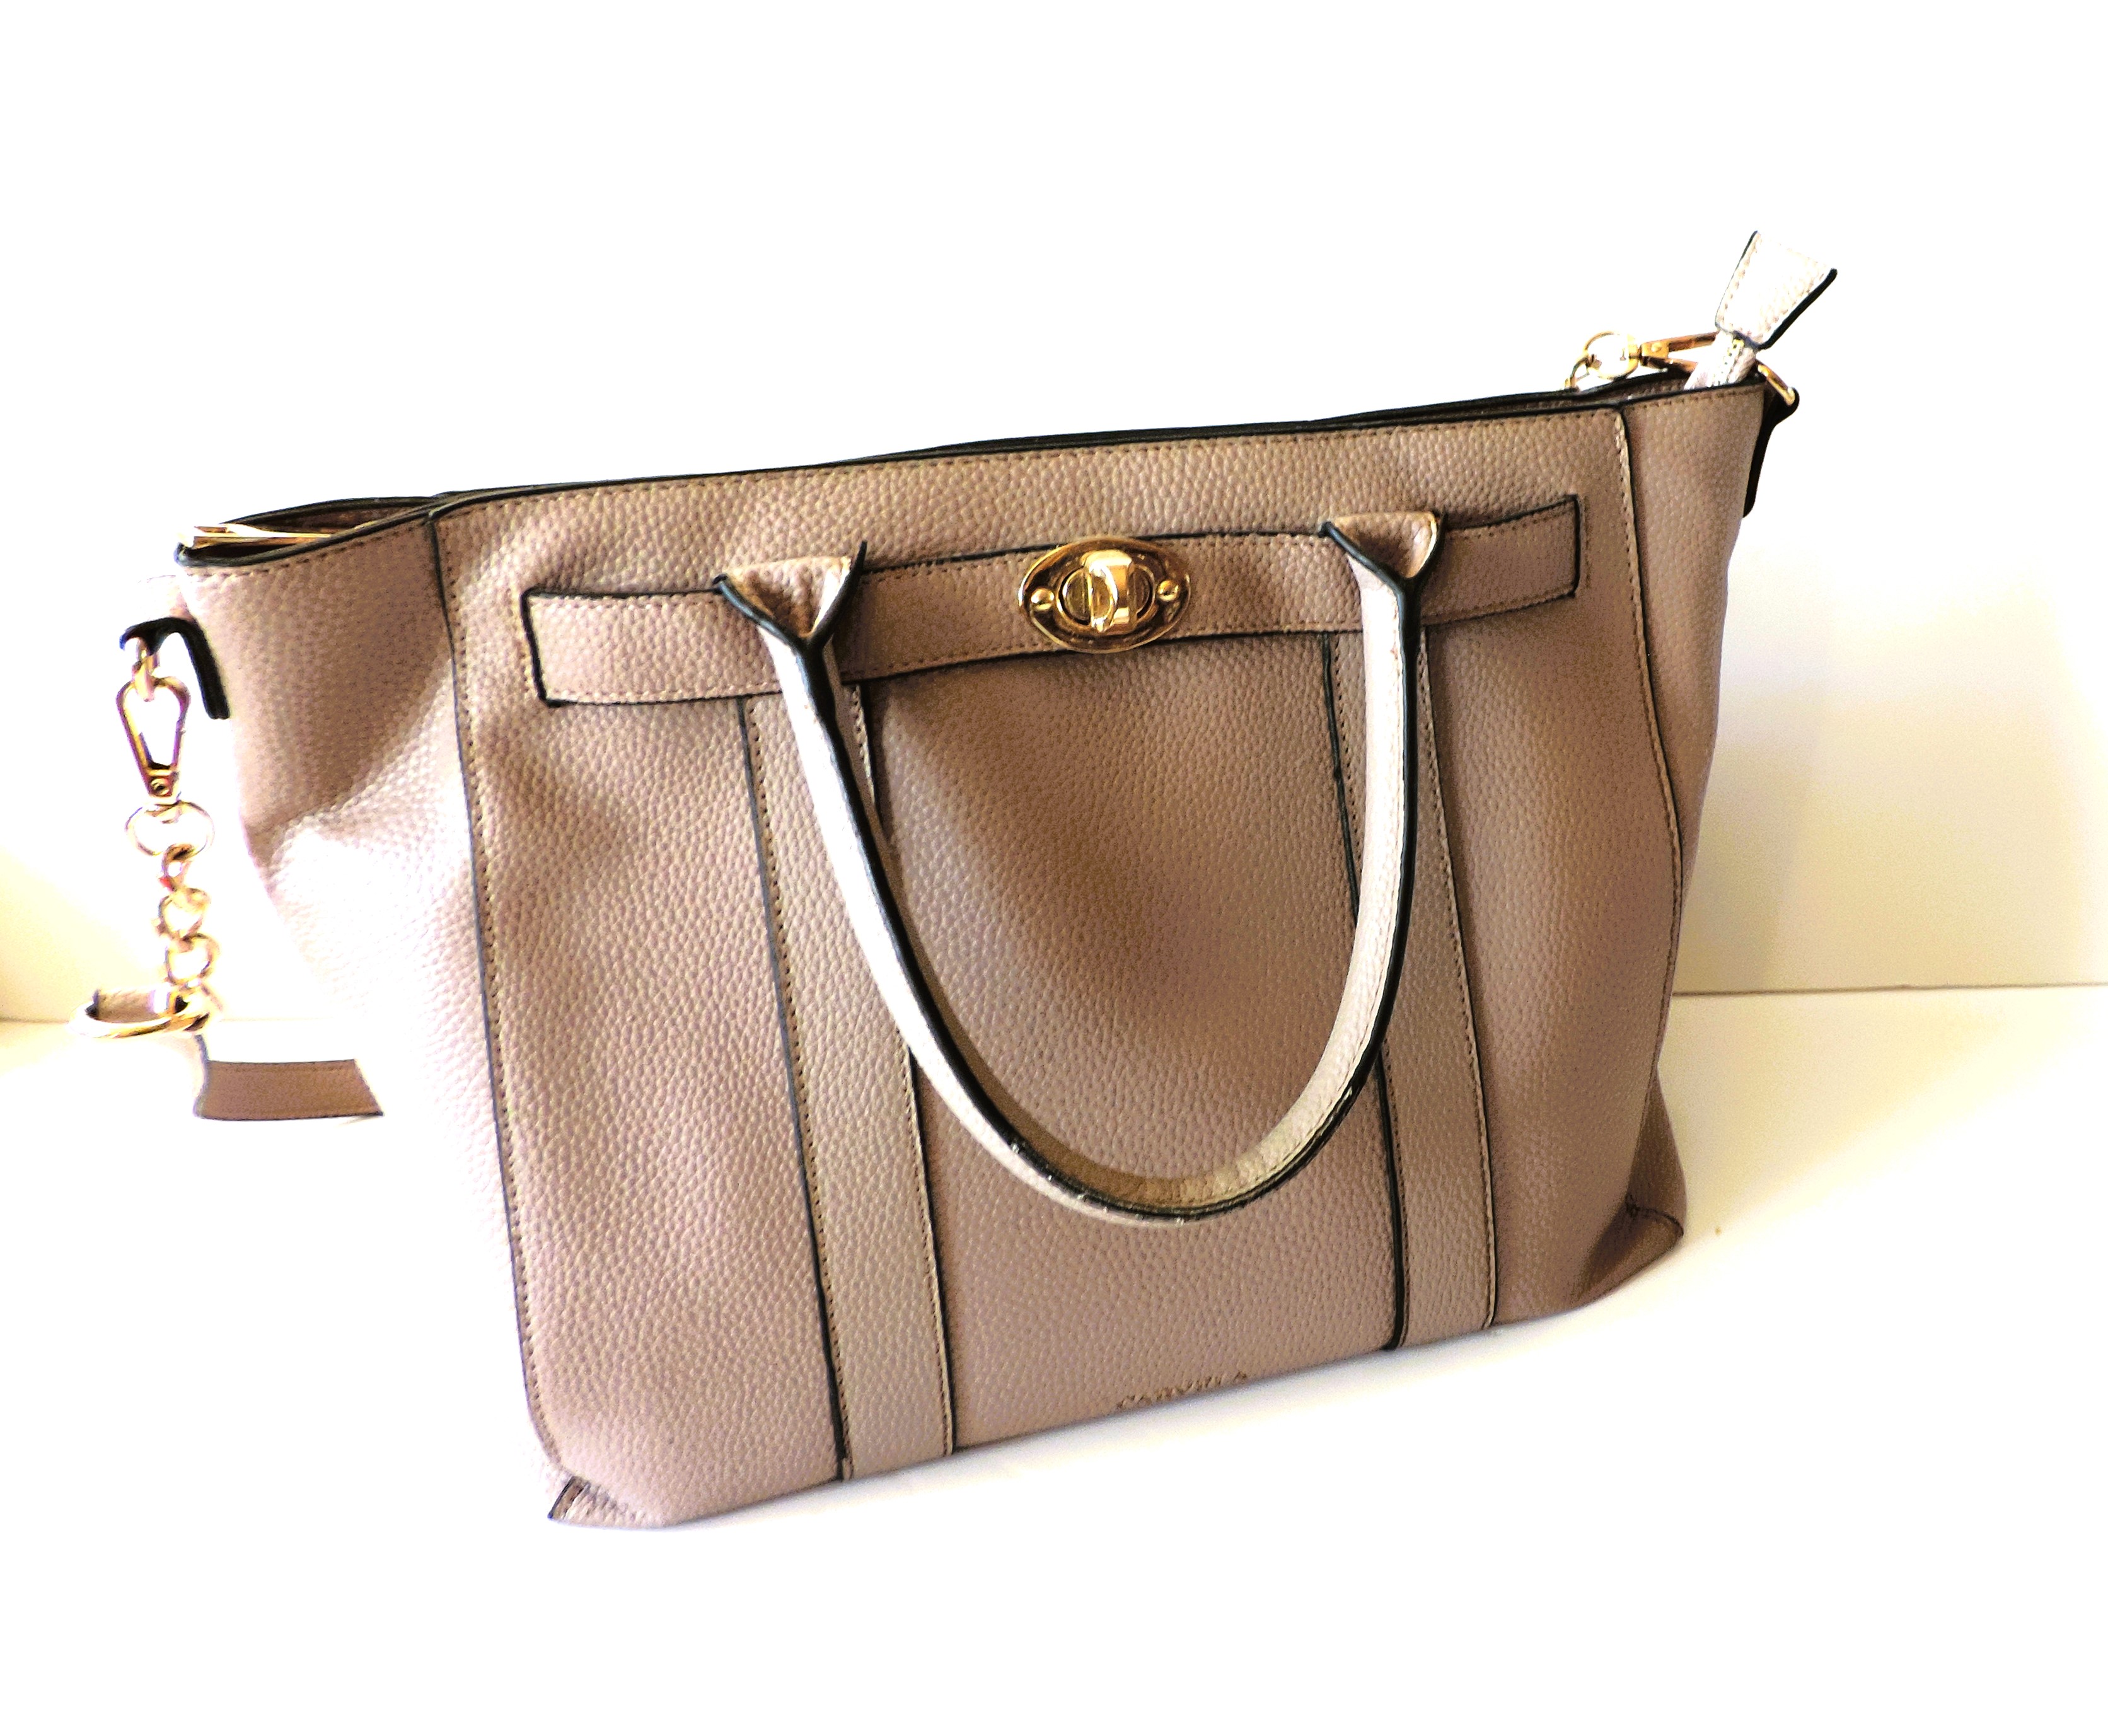 Large CARVELA Handbag with Shoulder Straps - Image 6 of 11